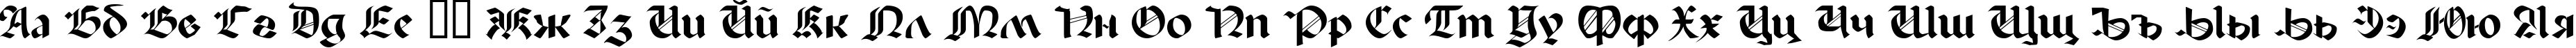 Пример написания русского алфавита шрифтом Paladin